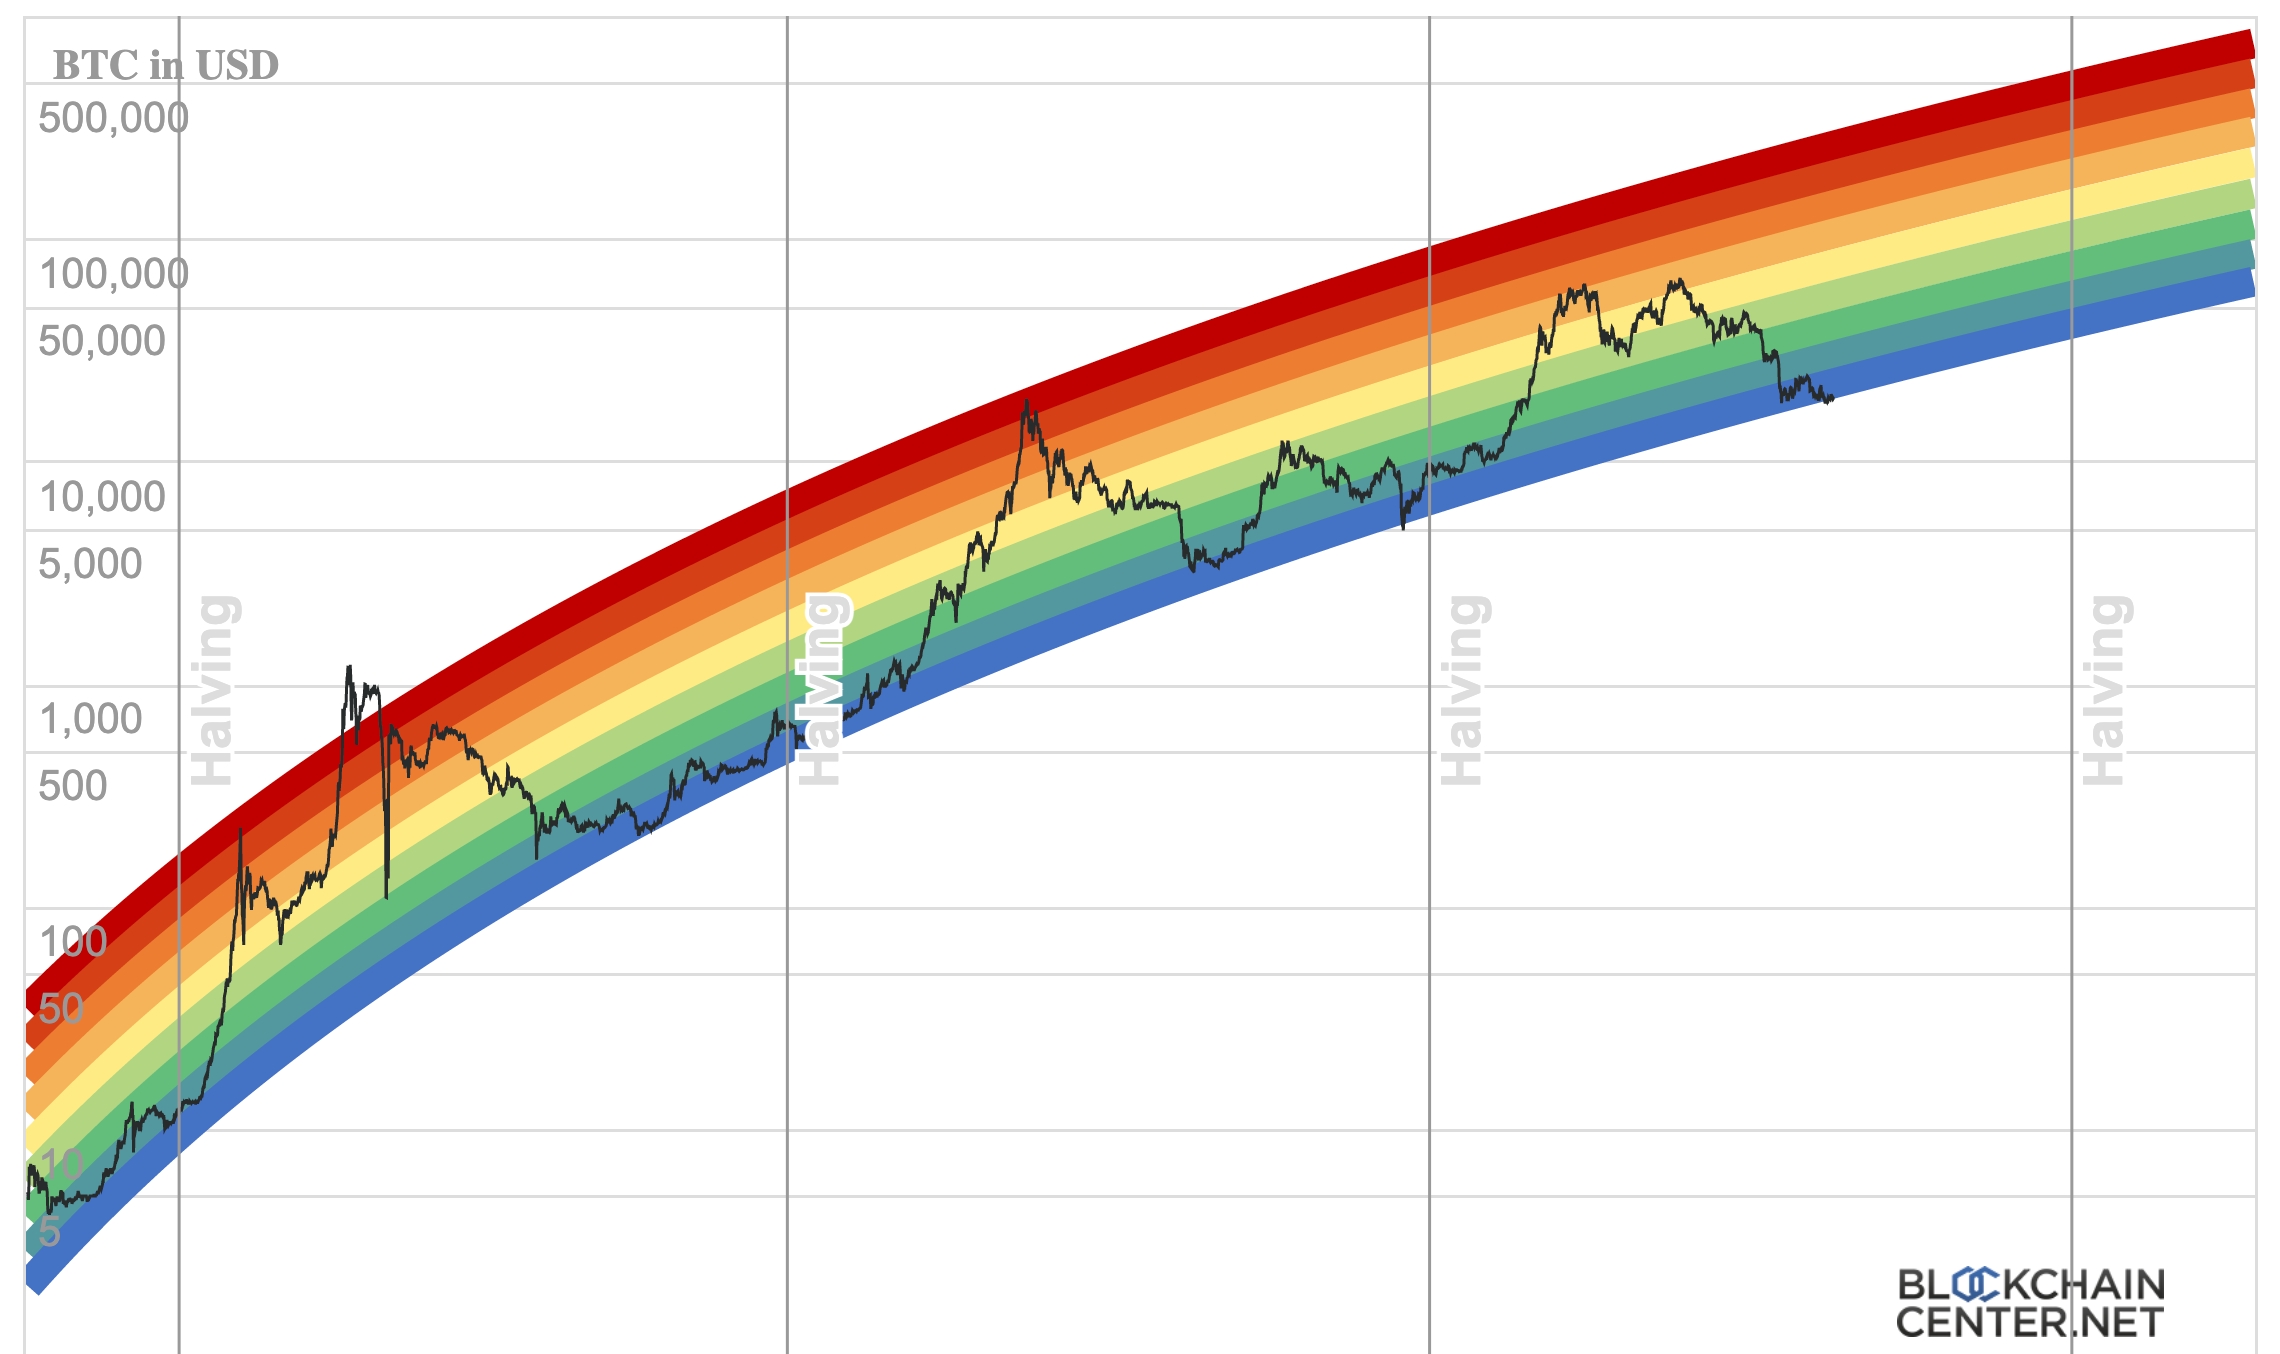 bitcoin-rainbow.jpg